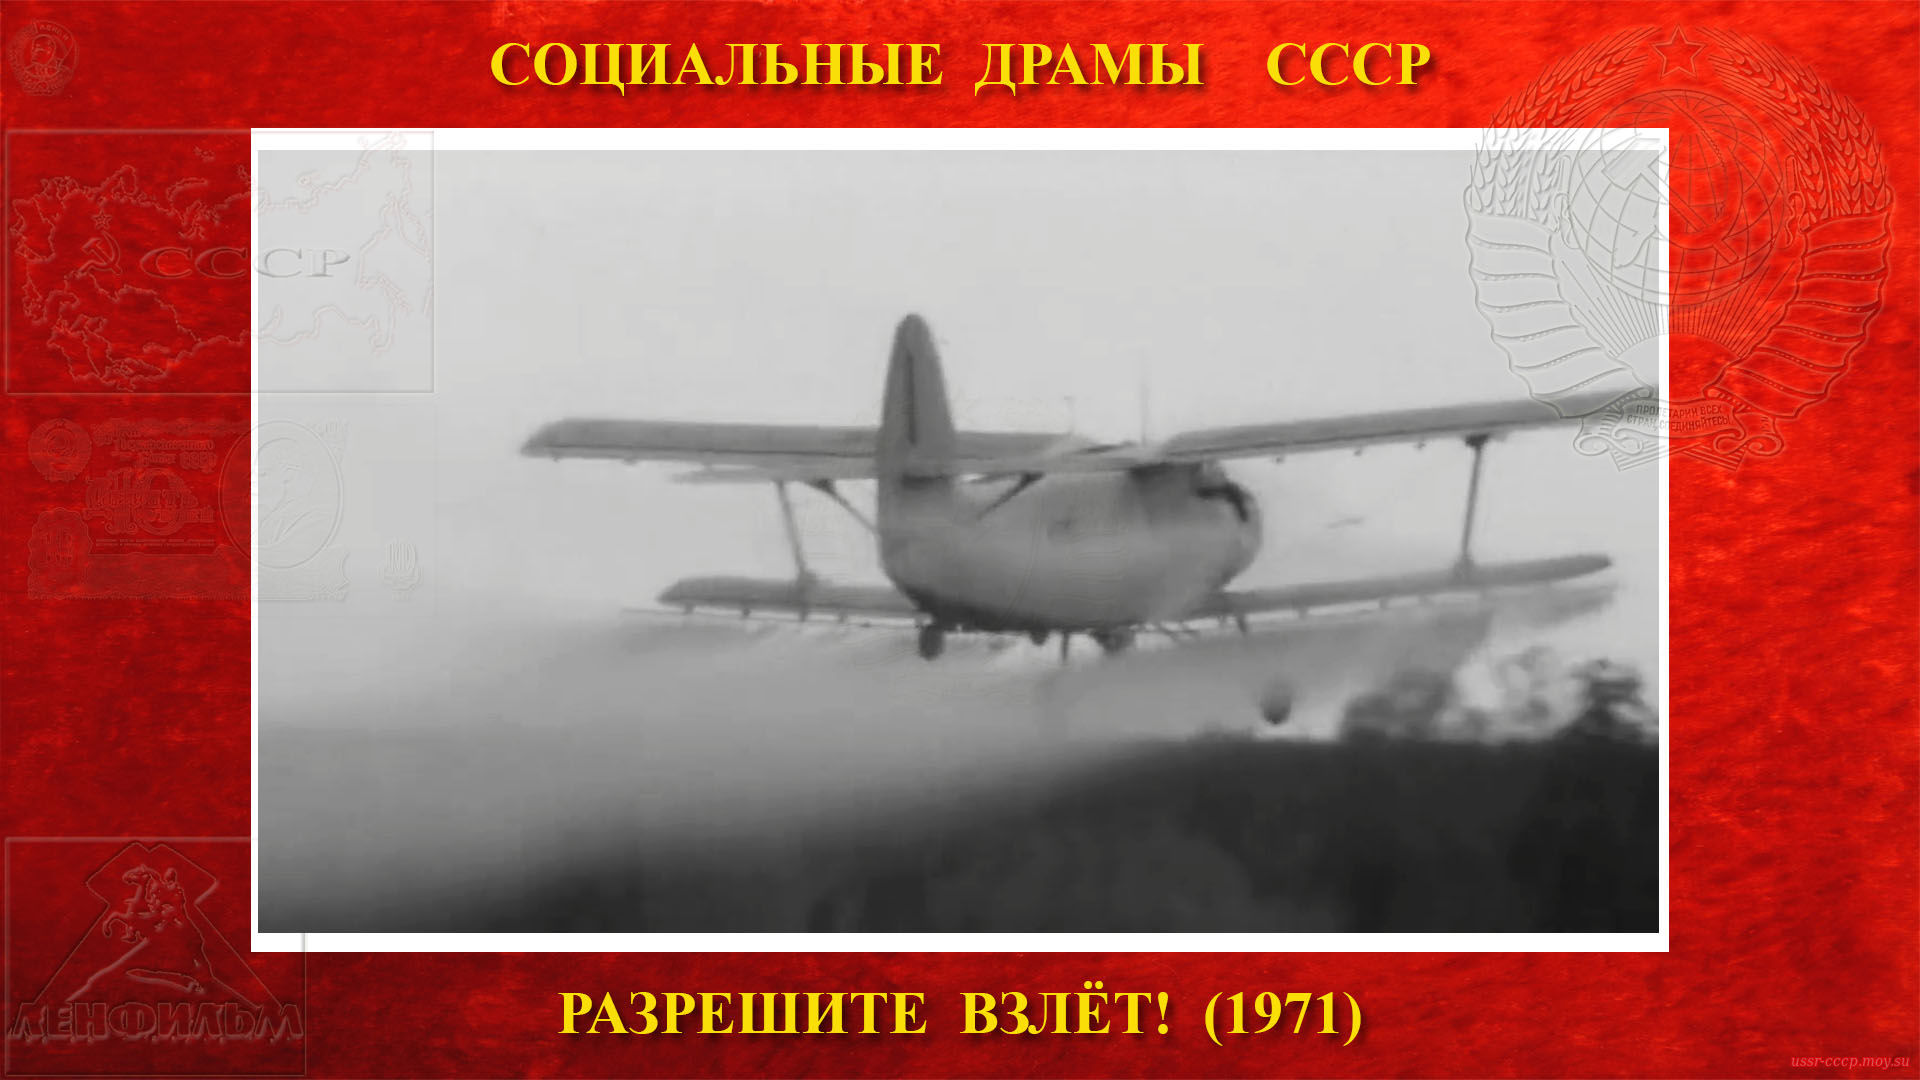 Разрешите ВЗЛЁТ! — Полёты продолжаются на Ан-2 борт СССР-02460 распыление химии на поля.